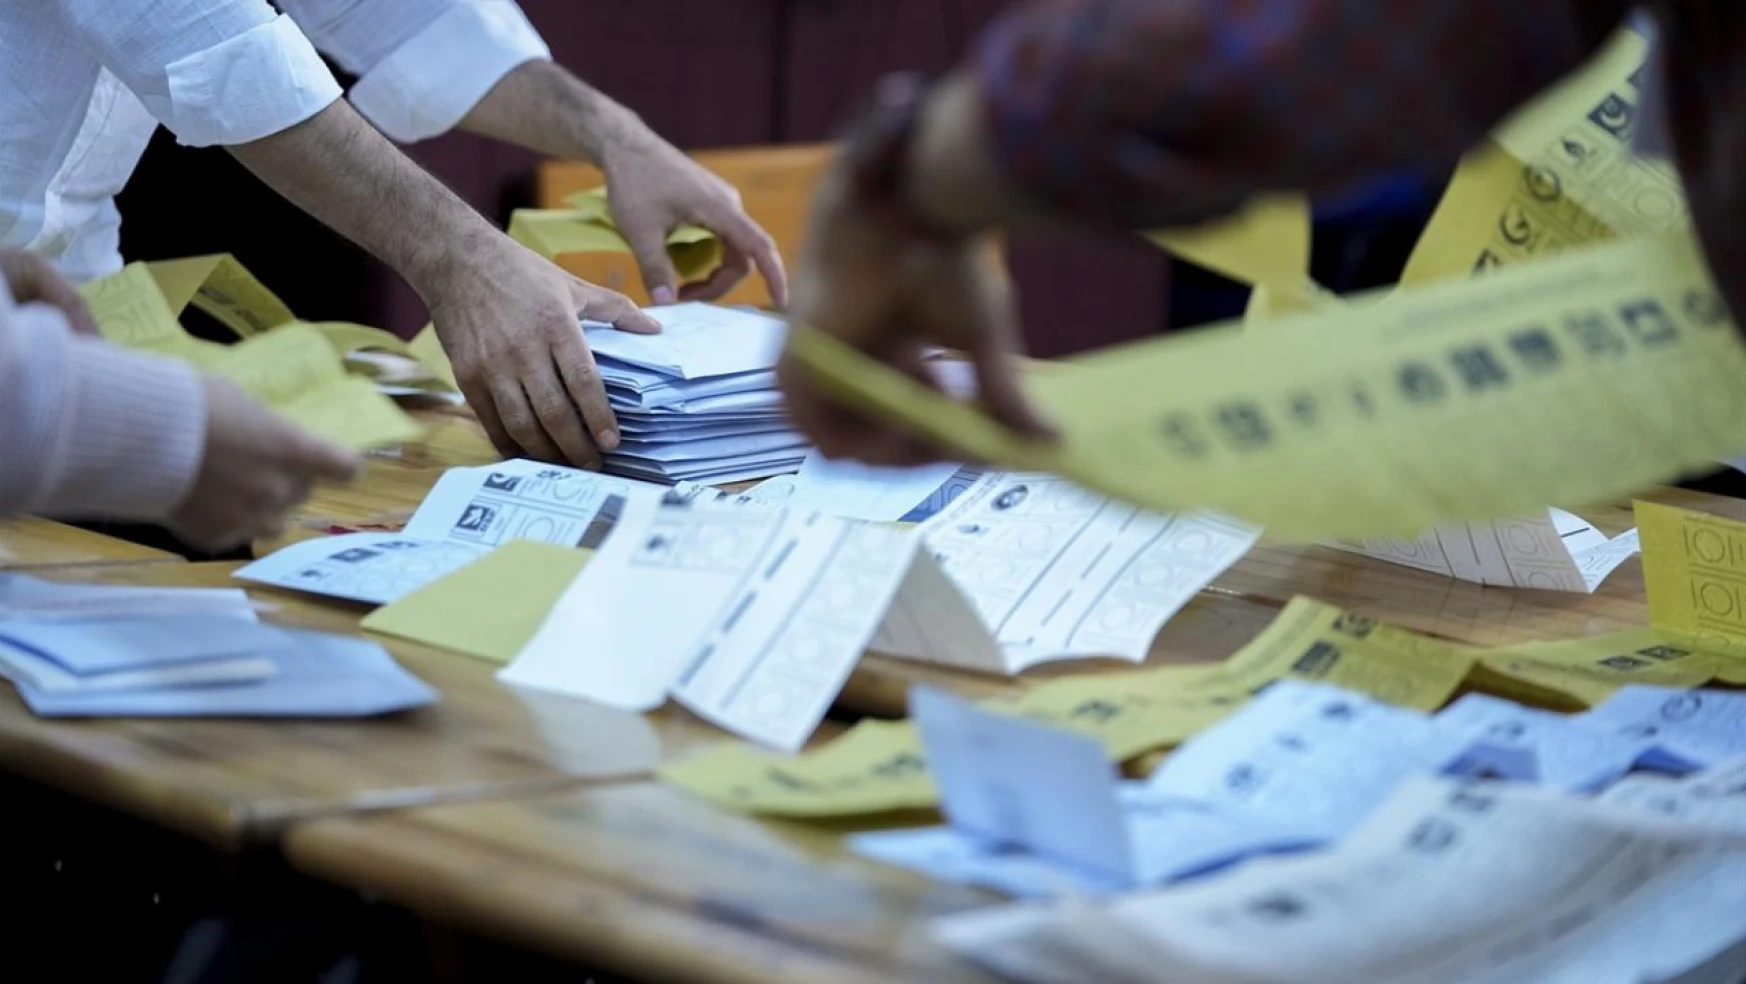 Malatya'nın Arapgir ve Yazıhan ilçelerinde seçim sonuçlarına itiraz edildi